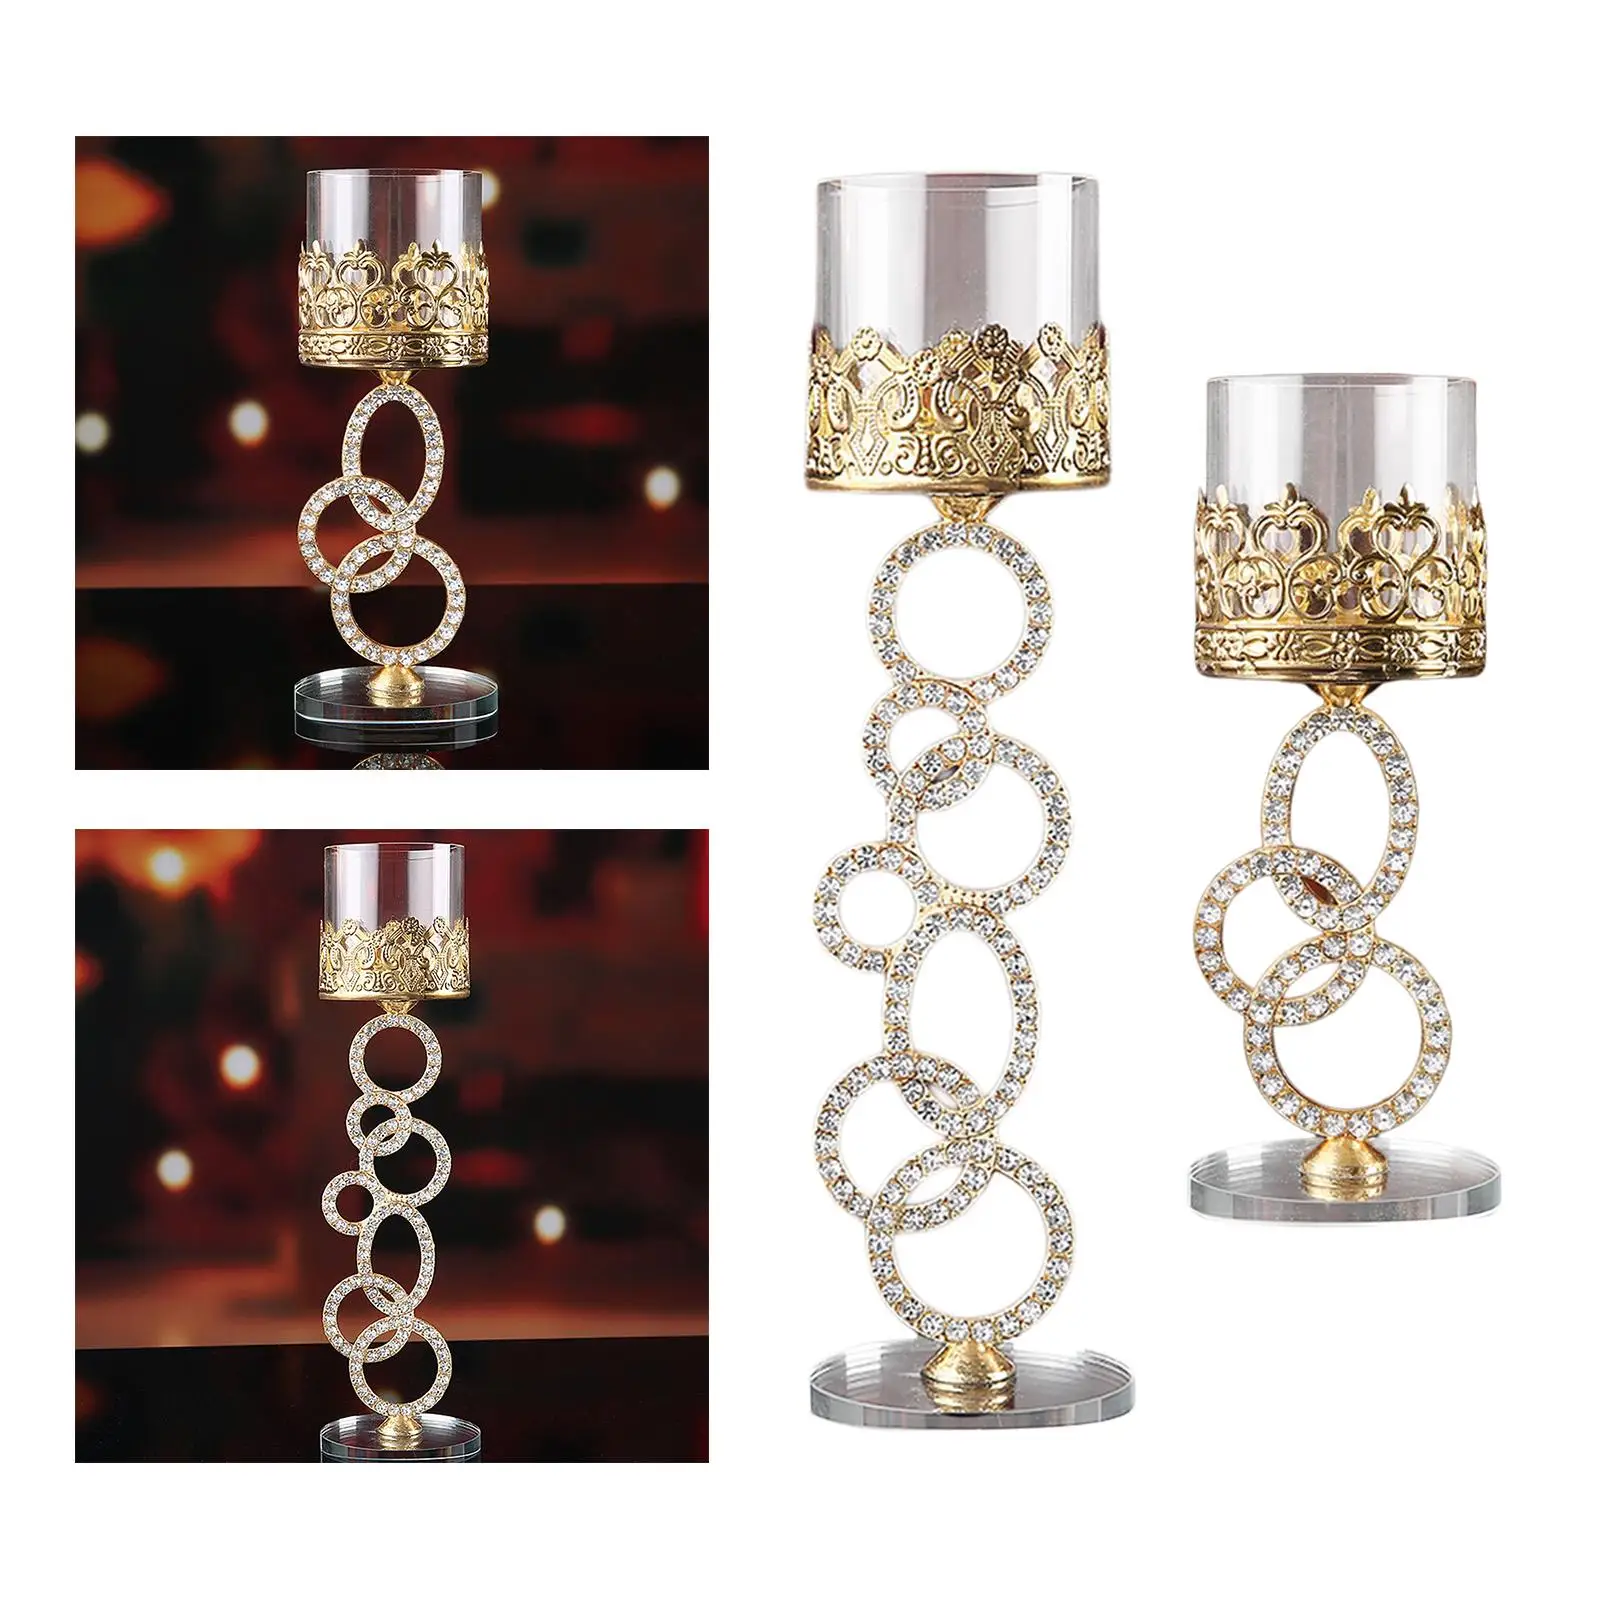 Cylinder Crystal Candlestick, Decorative Tea Light Holder Ornament Holders for Tabletop Cafe Wedding Home Decor